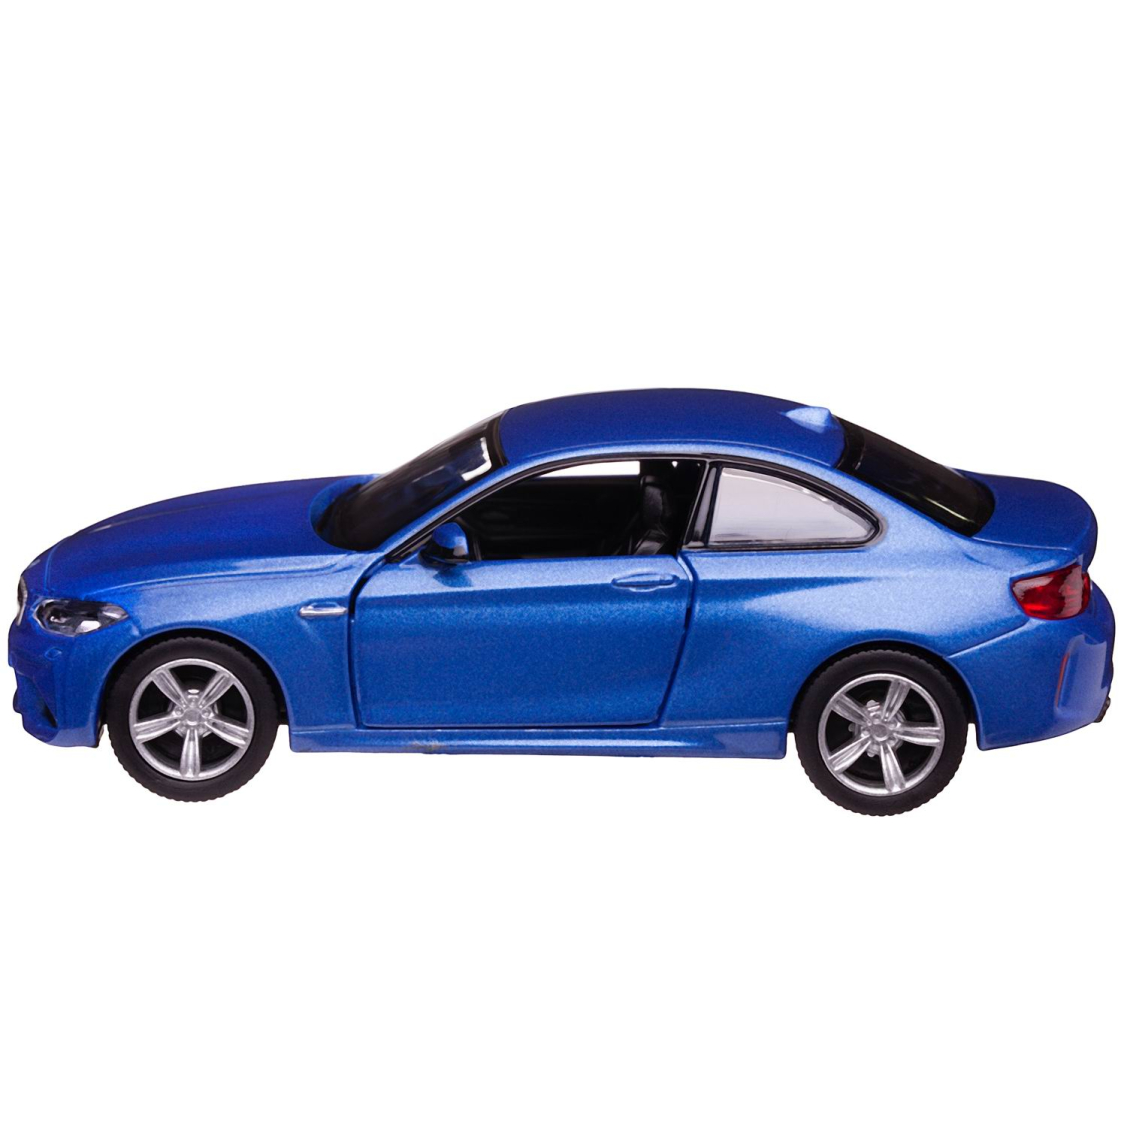 Машинка металлическая Uni-Fortune RMZ City 1:36 BMW M2 COUPE with Strip инерционная, 2 цвета (синий), 11,80х4,90х3,73 см